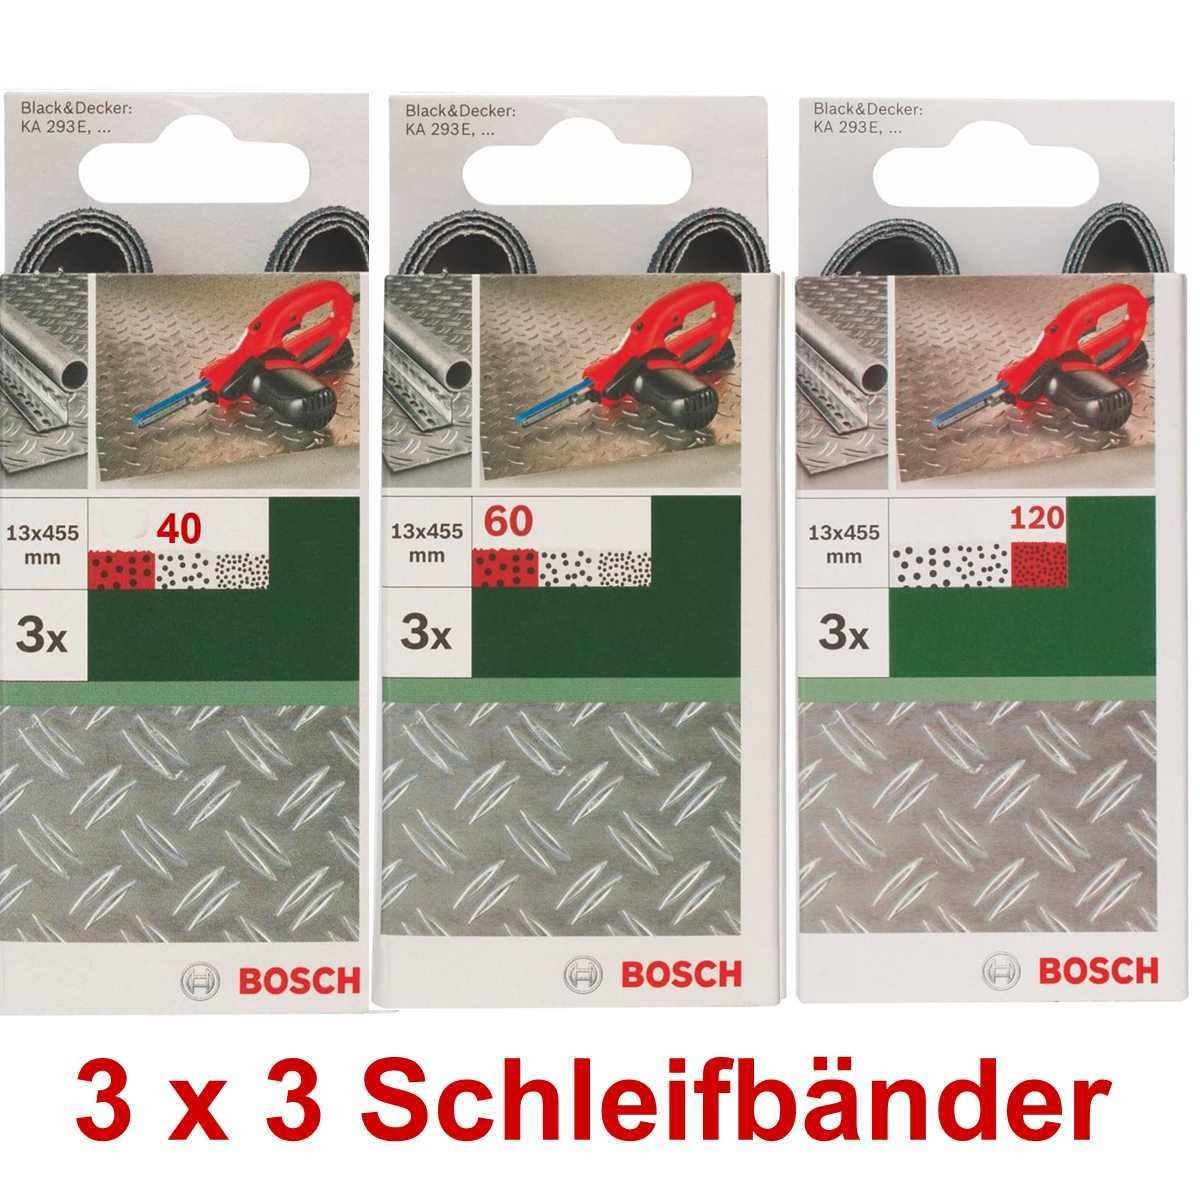 BOSCH Bohrfutter Bosch 3 x 3 Schleifbänder für B+D Powerfile KA 293E 13 x 451 mm, 40,60